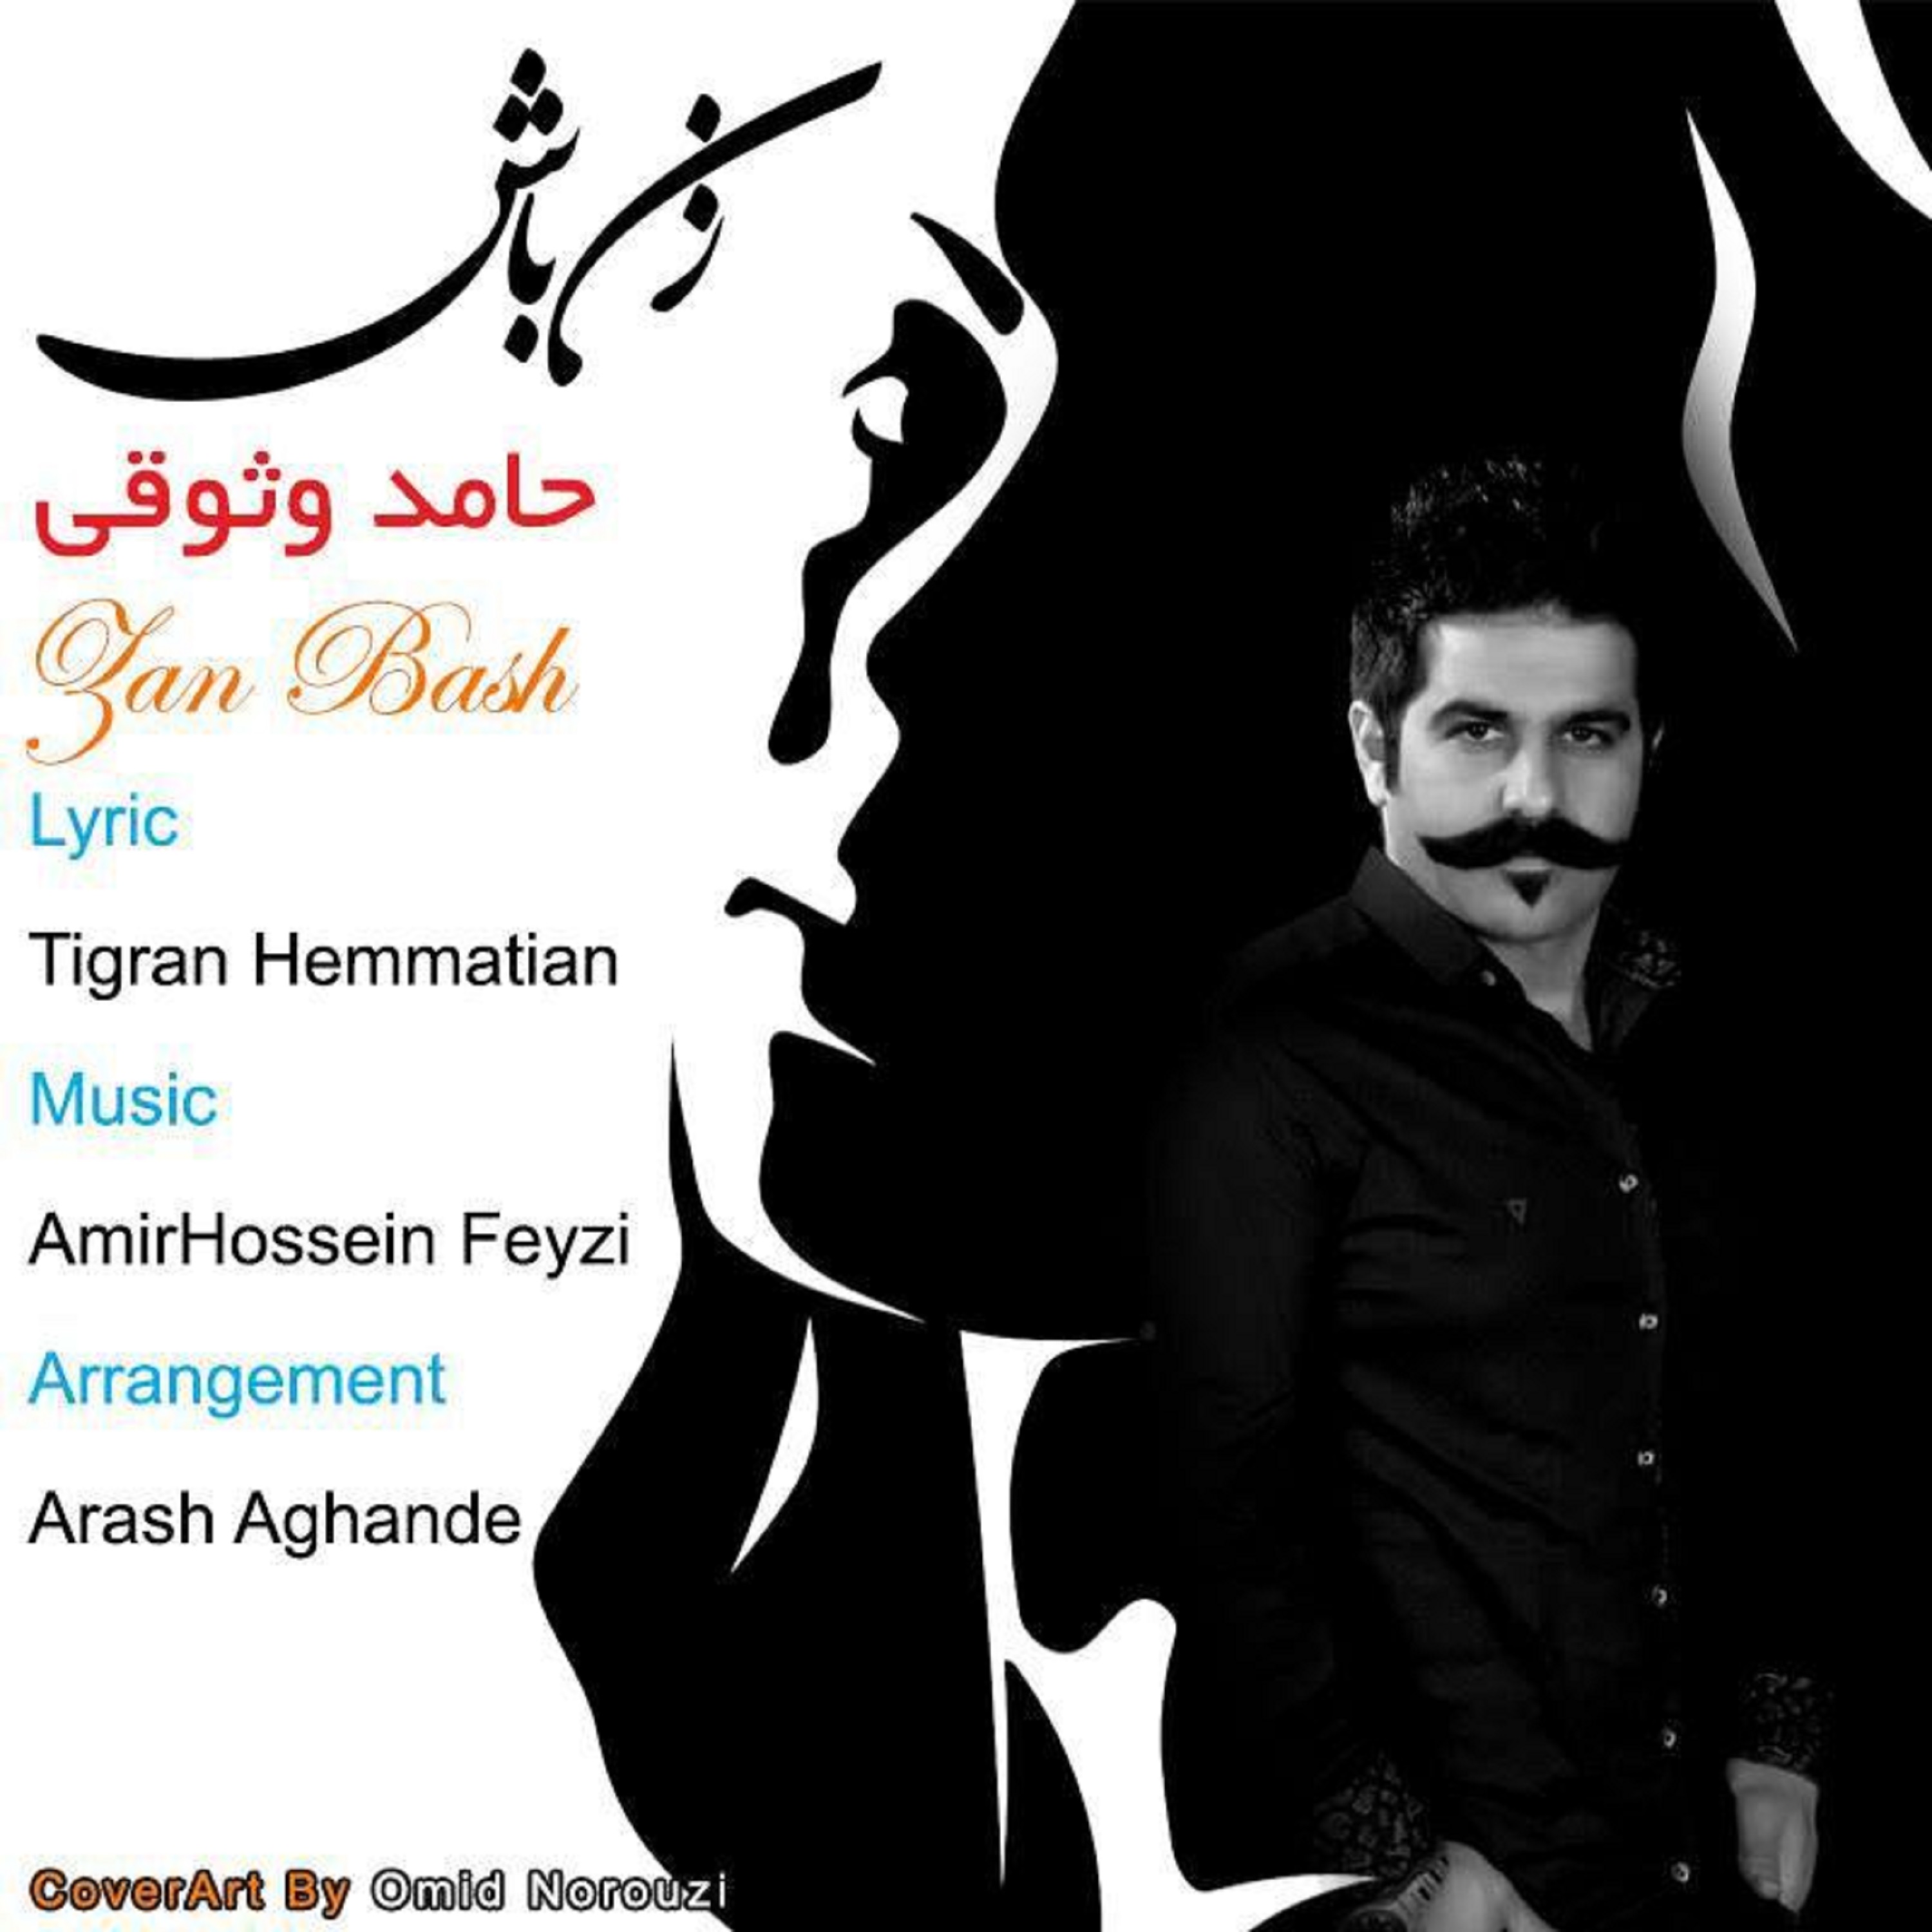  دانلود آهنگ جدید حامد وثوقی - زن باش | Download New Music By Hamed Vosoughi - Zan Bash